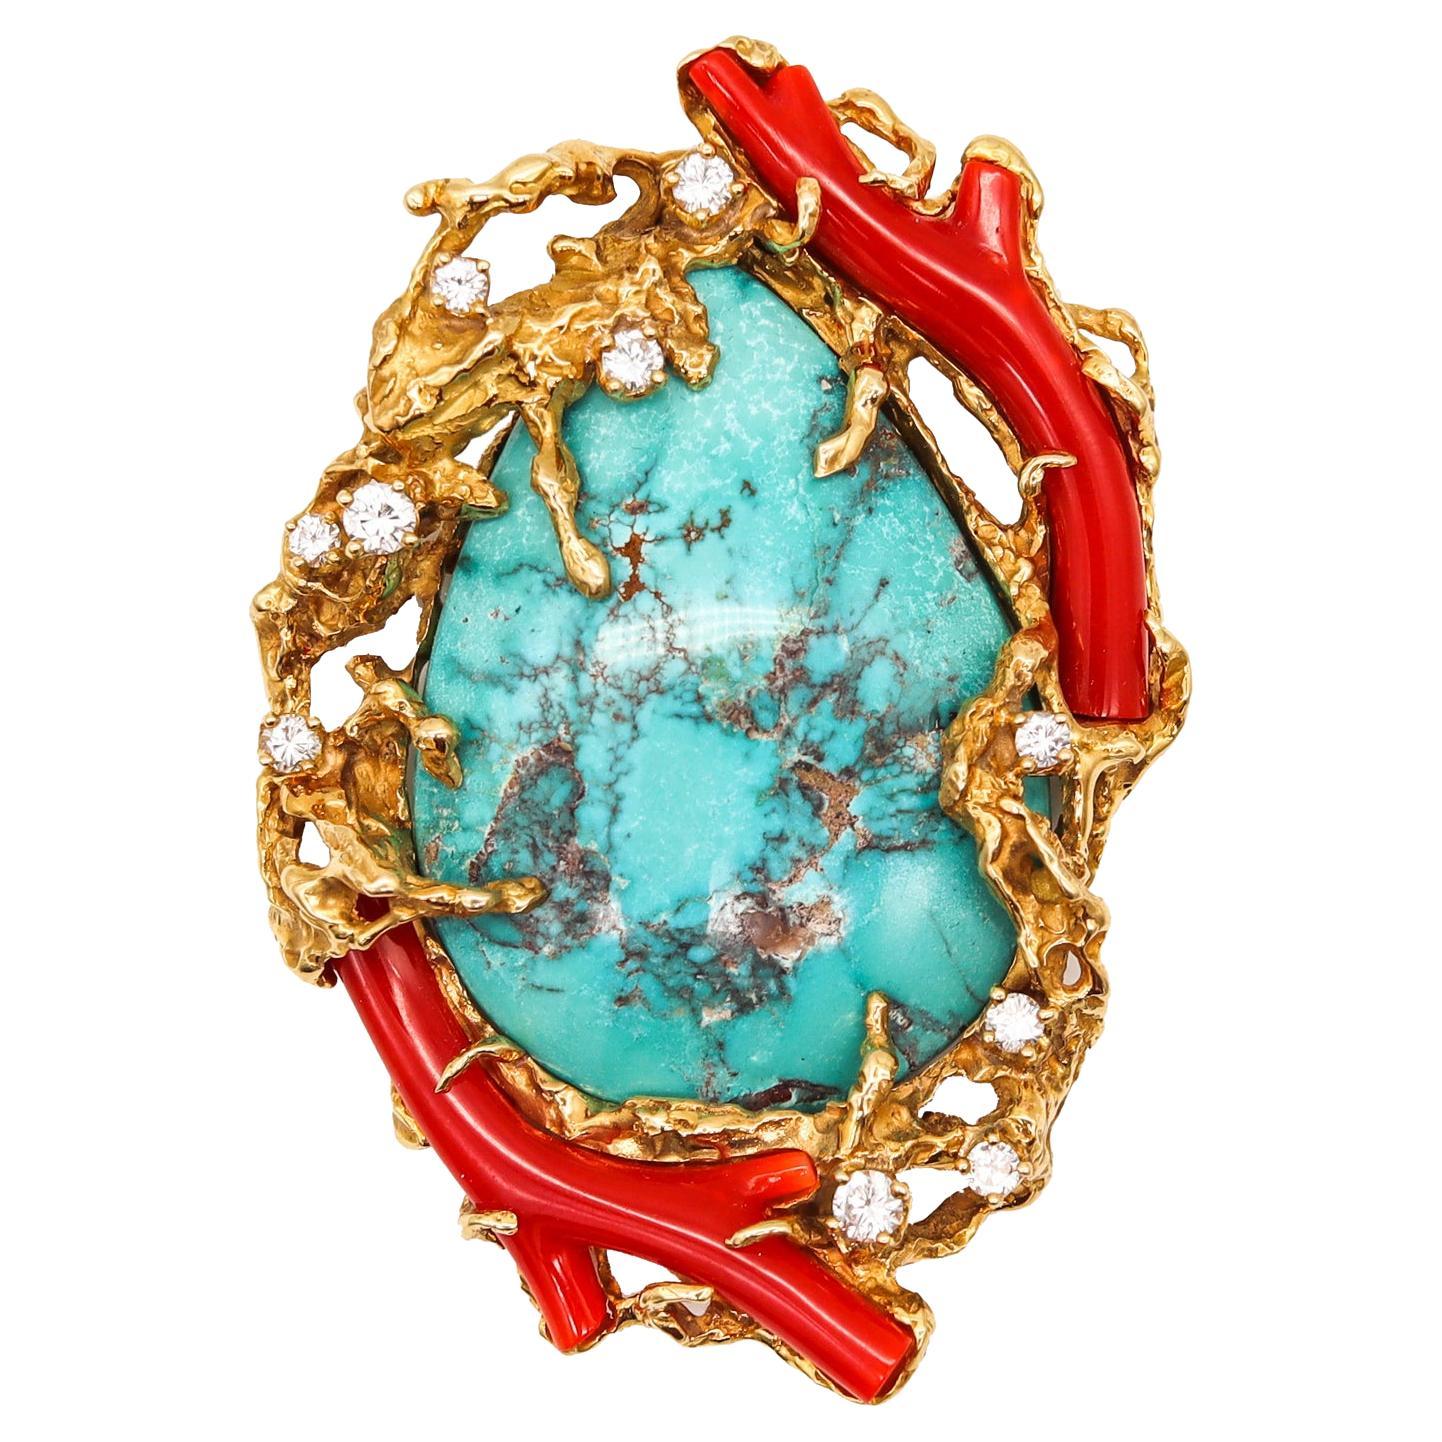 Arthur King 1960 Pièce organique en or 18 carats avec 106,41 carats de diamants, turquoise et corail